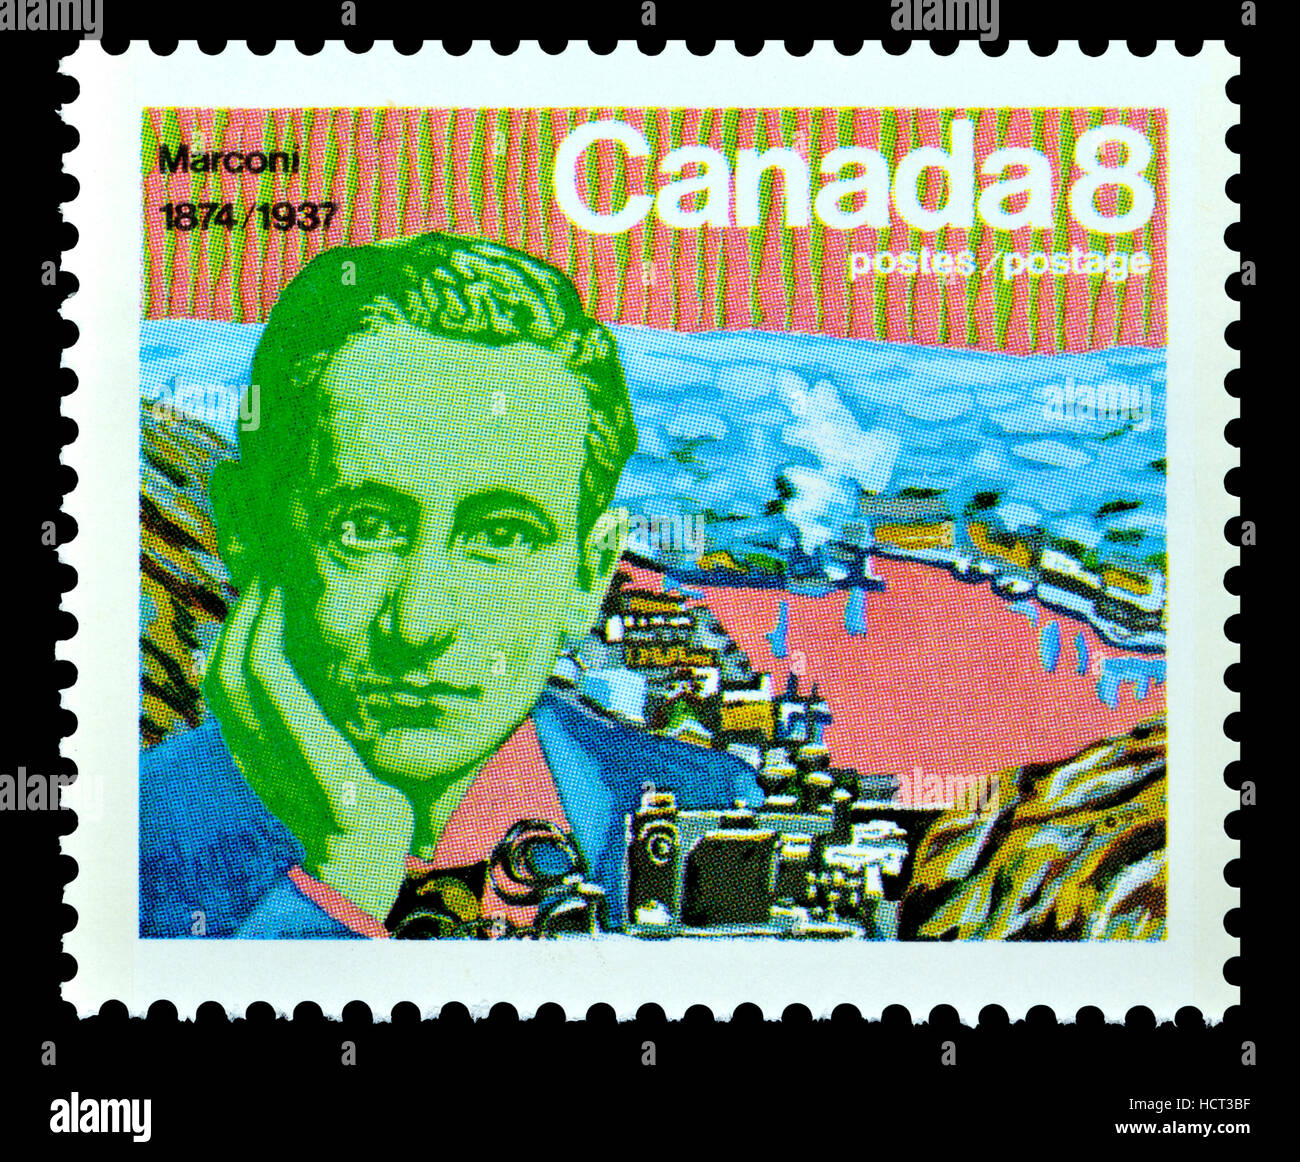 Timbre-poste canadien (1974) : Guglielmo Marconi, 1874 - 1937) ingénieur en électricité et inventeur italien connu pour son travail de pionnier sur longue distance Banque D'Images